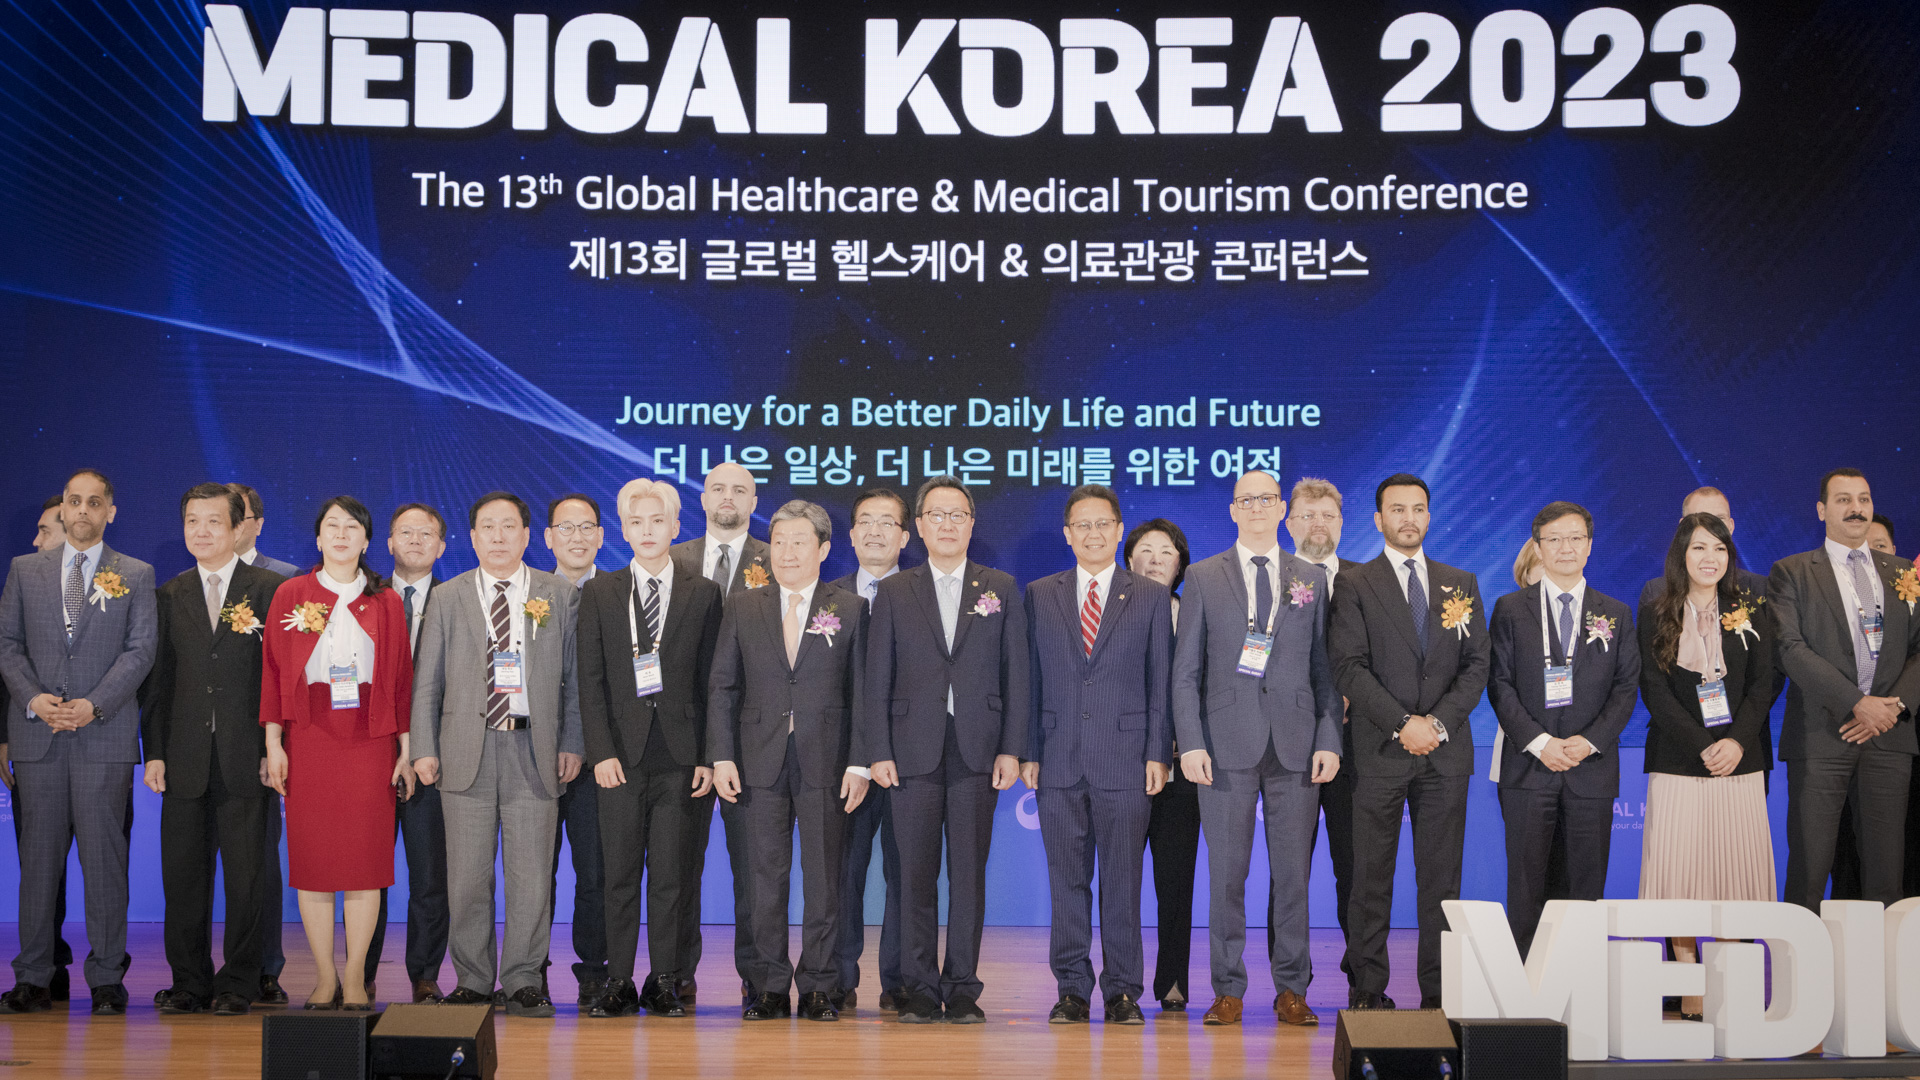 ‘더 나은 일상, 더 나은 미래를 위한 여정’ 「메디컬 코리아(Medical Korea) 2023」 사진27